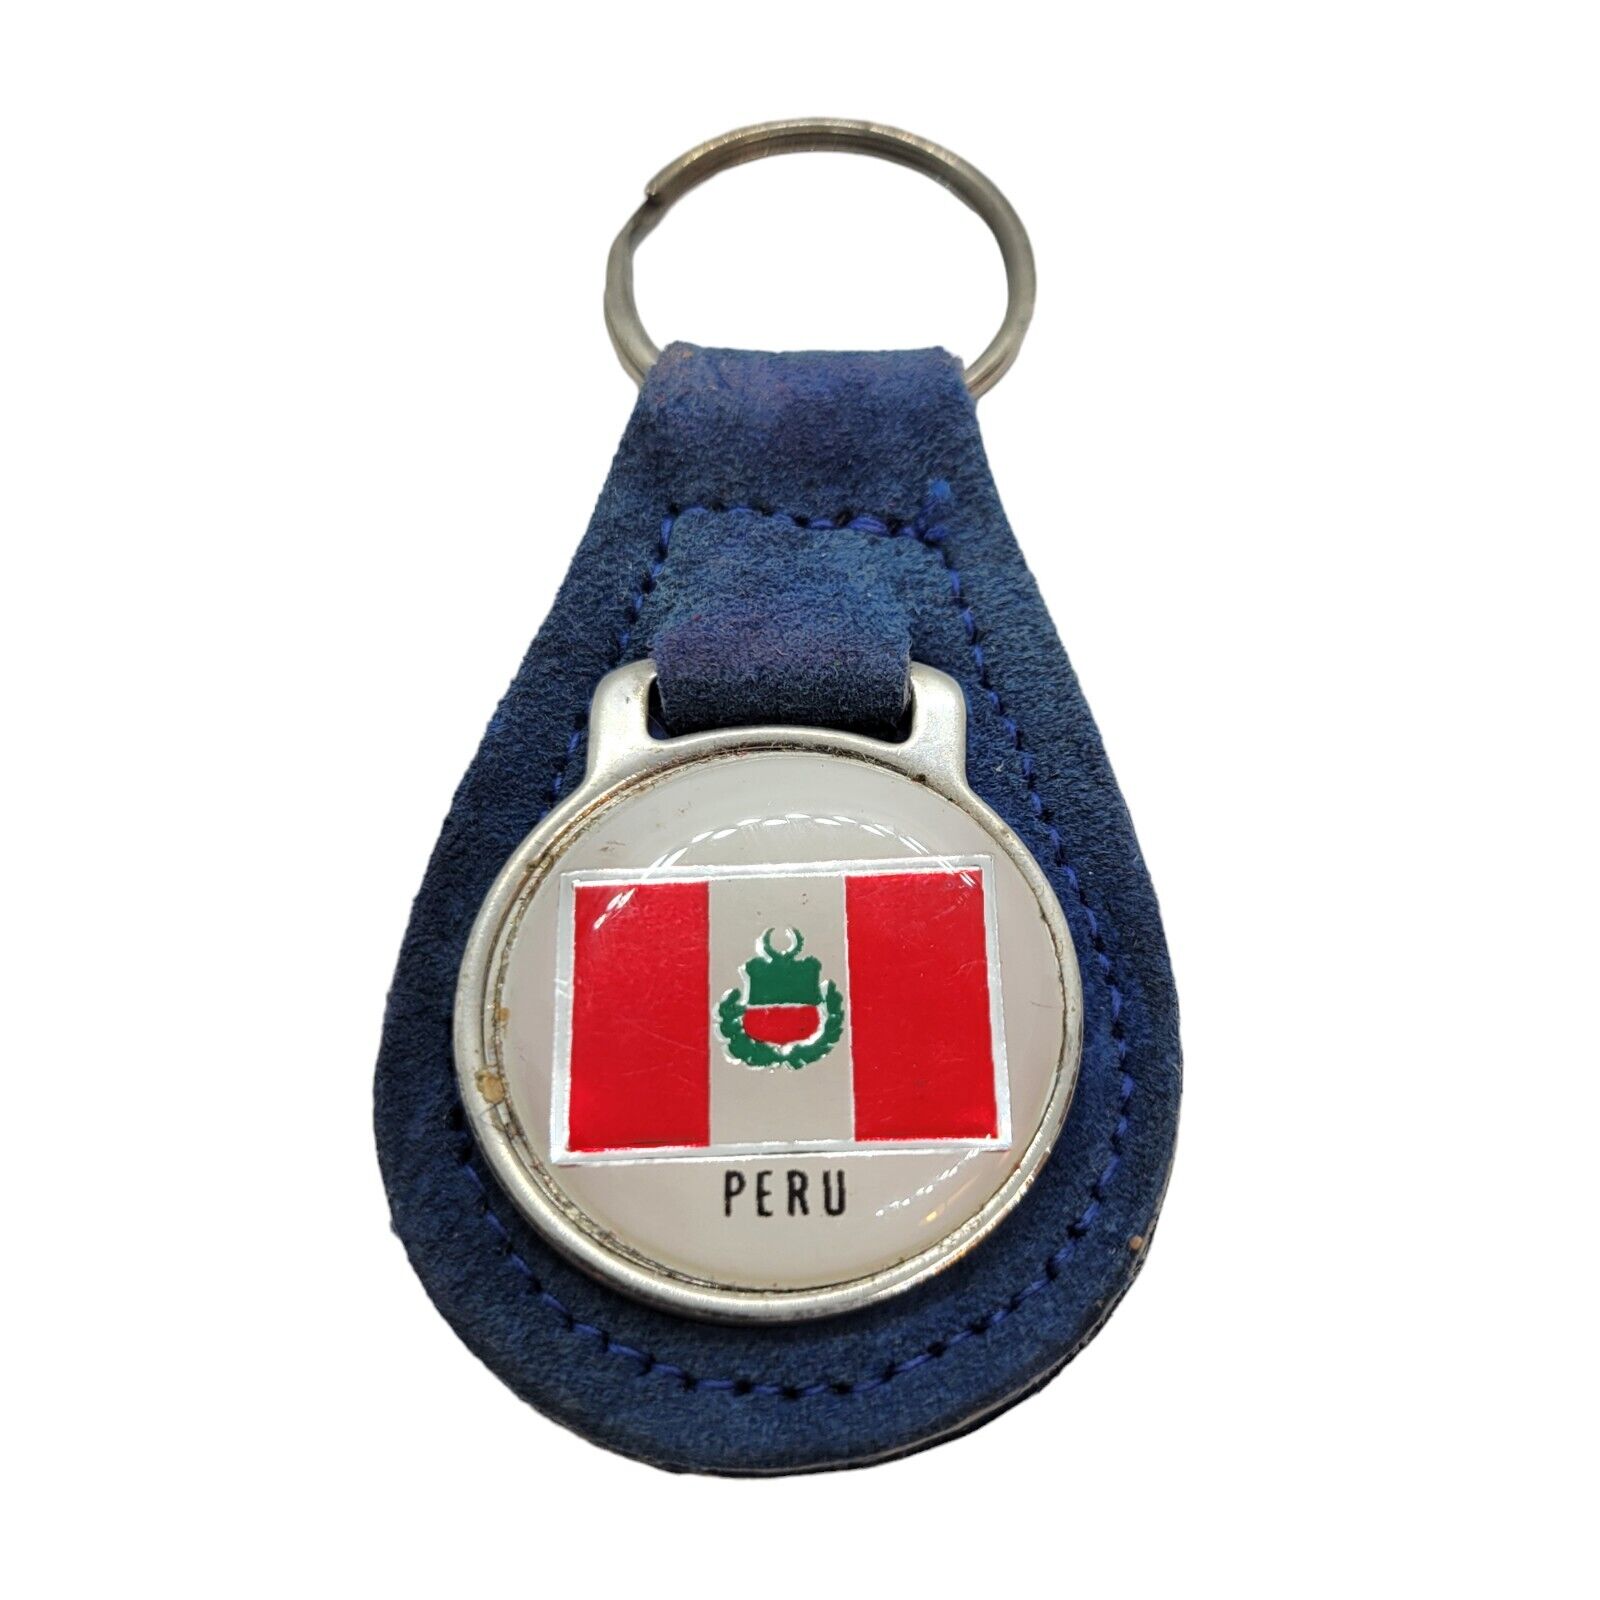 Vintage PERU Keychain Fob